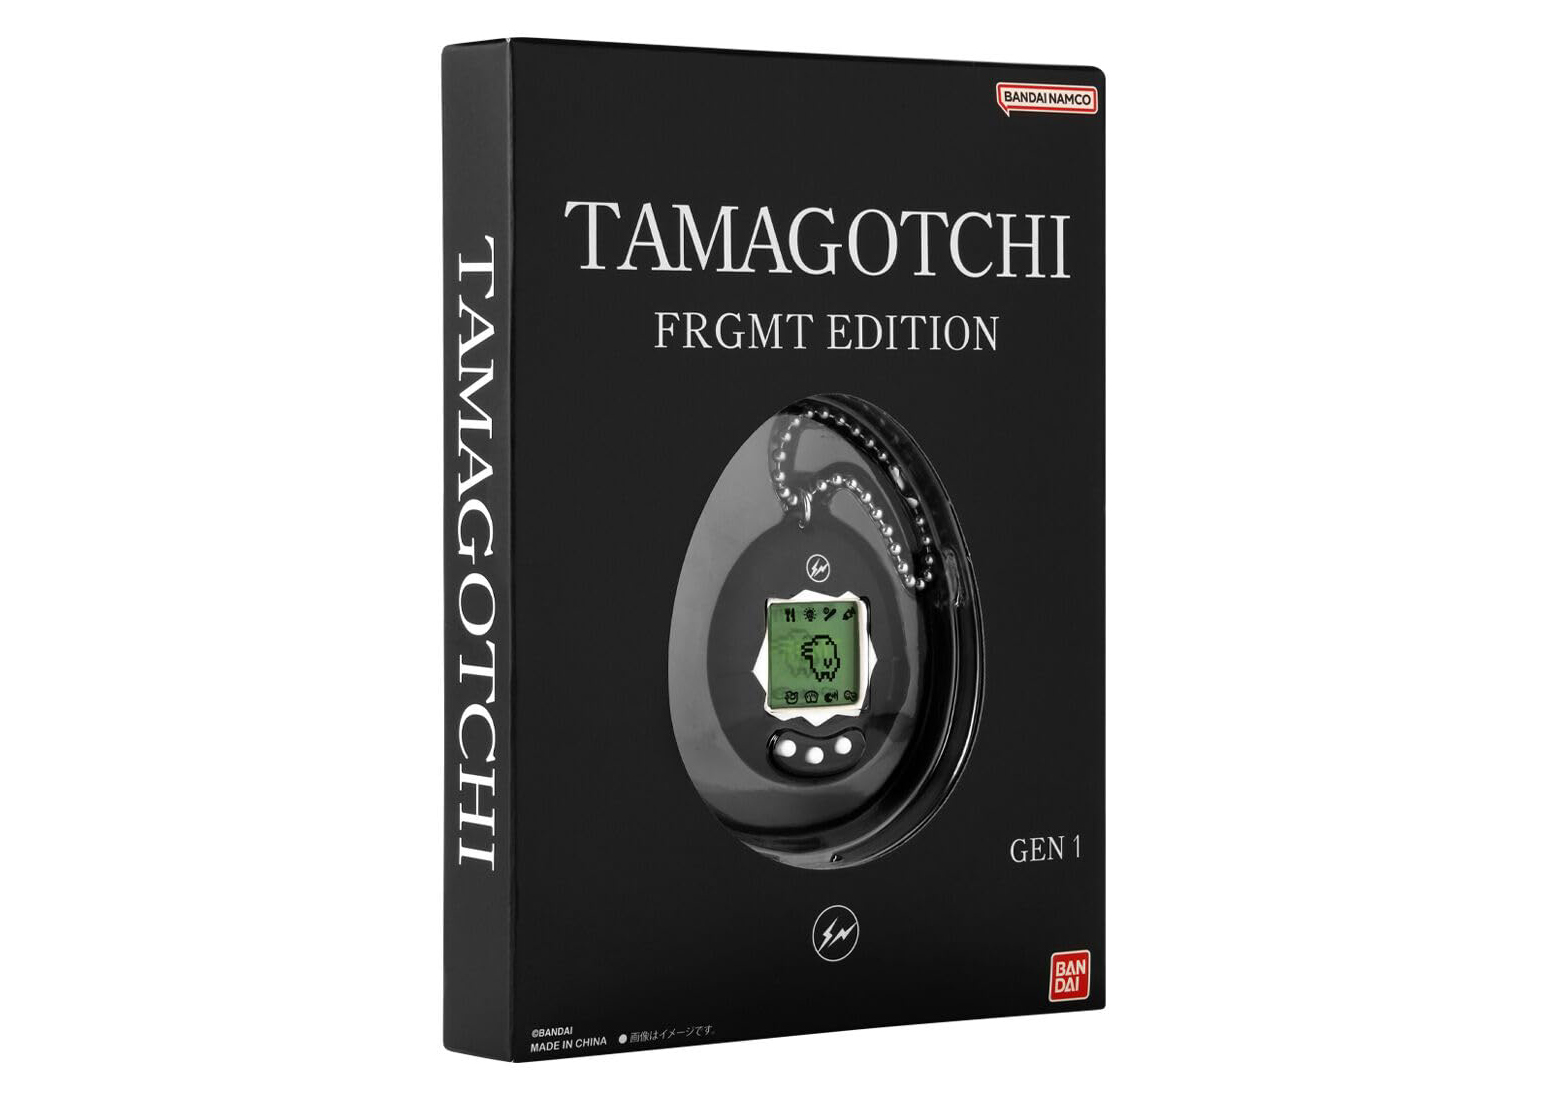 Bandai Tamagotchi FRGMT Edition Gen 1